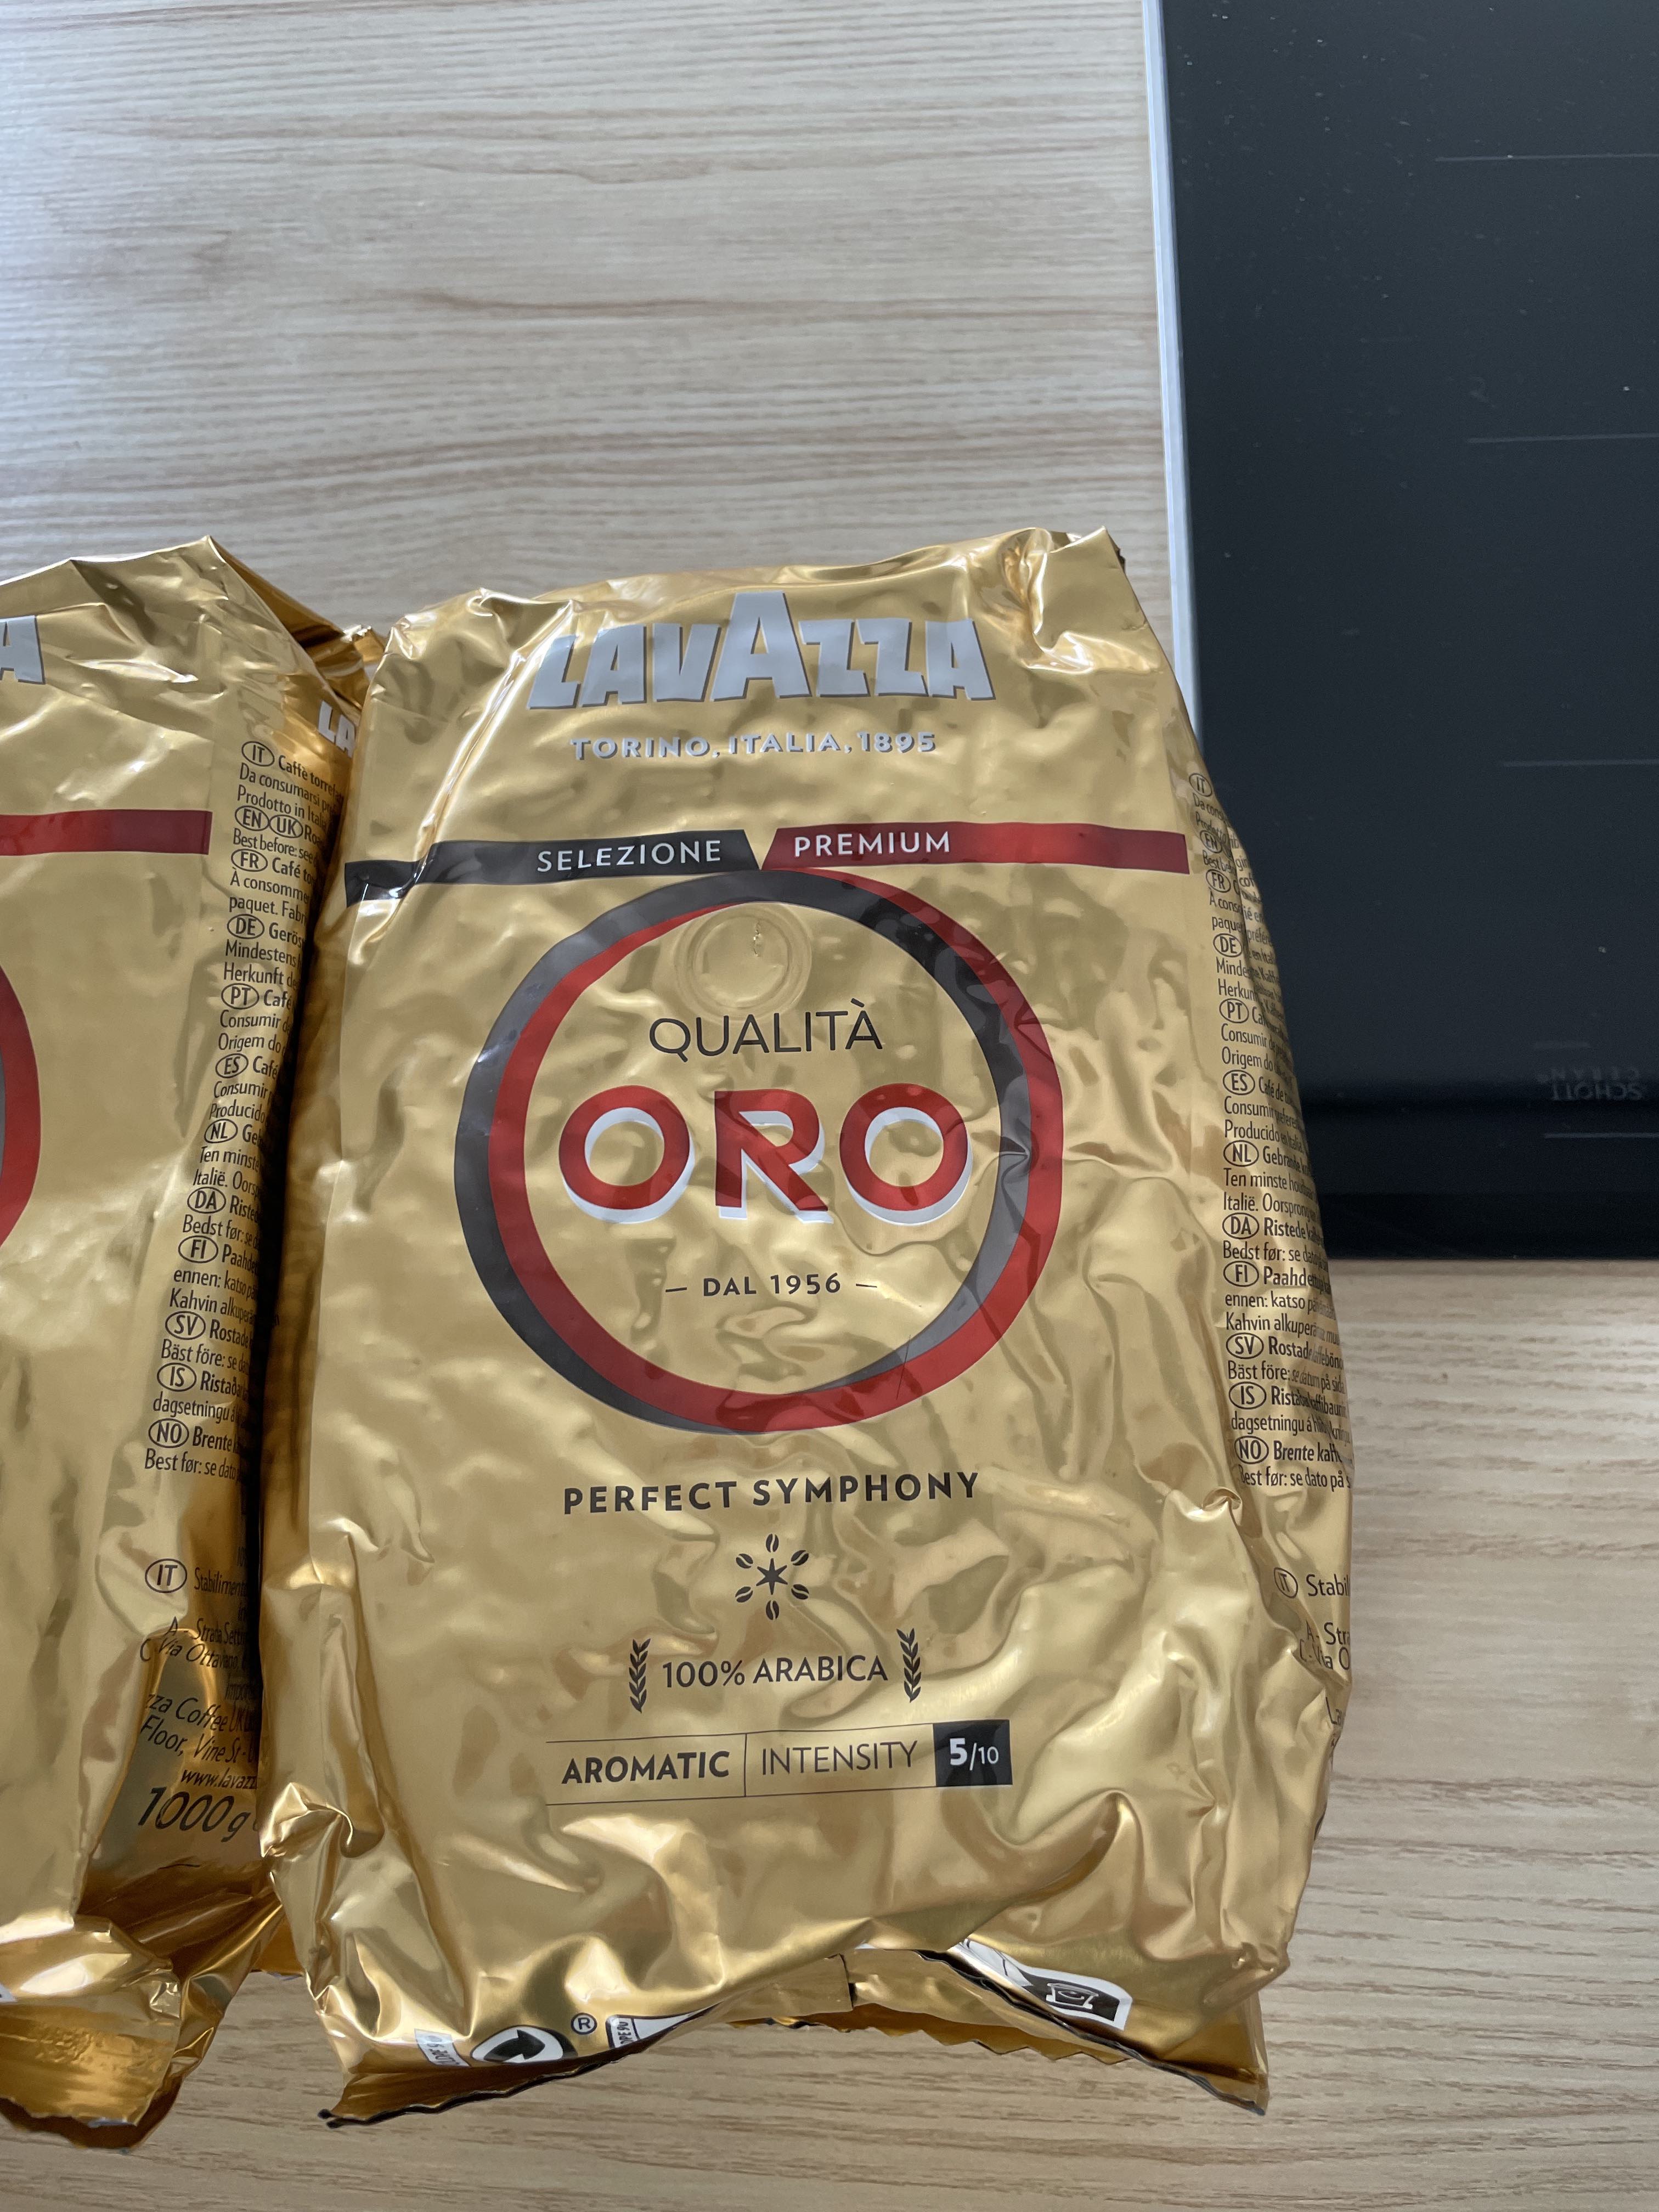 Qualitá Oro café 100% arábica en grano intensidad 5/10